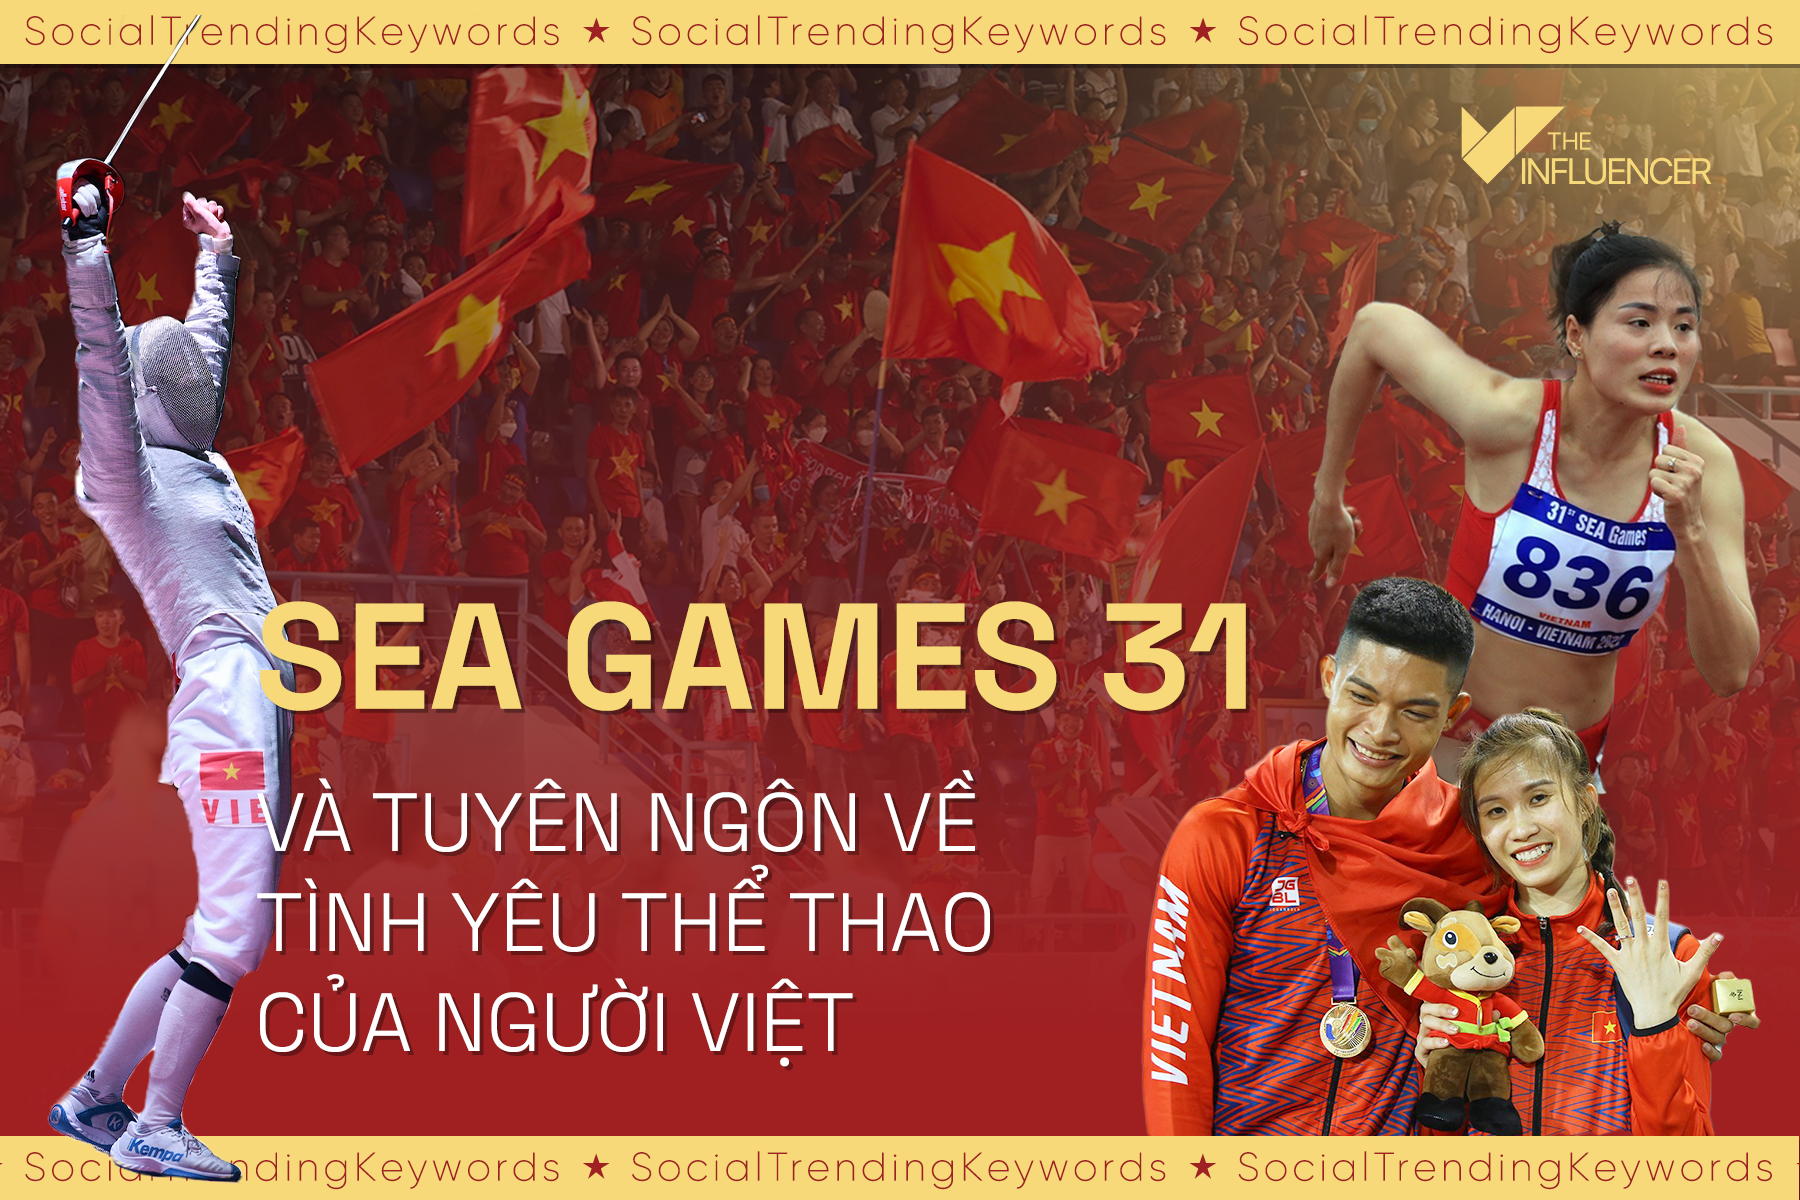 #SocialTrendingKeywords: SEA Games 31 và tuyên ngôn về tình yêu thể thao của người Việt